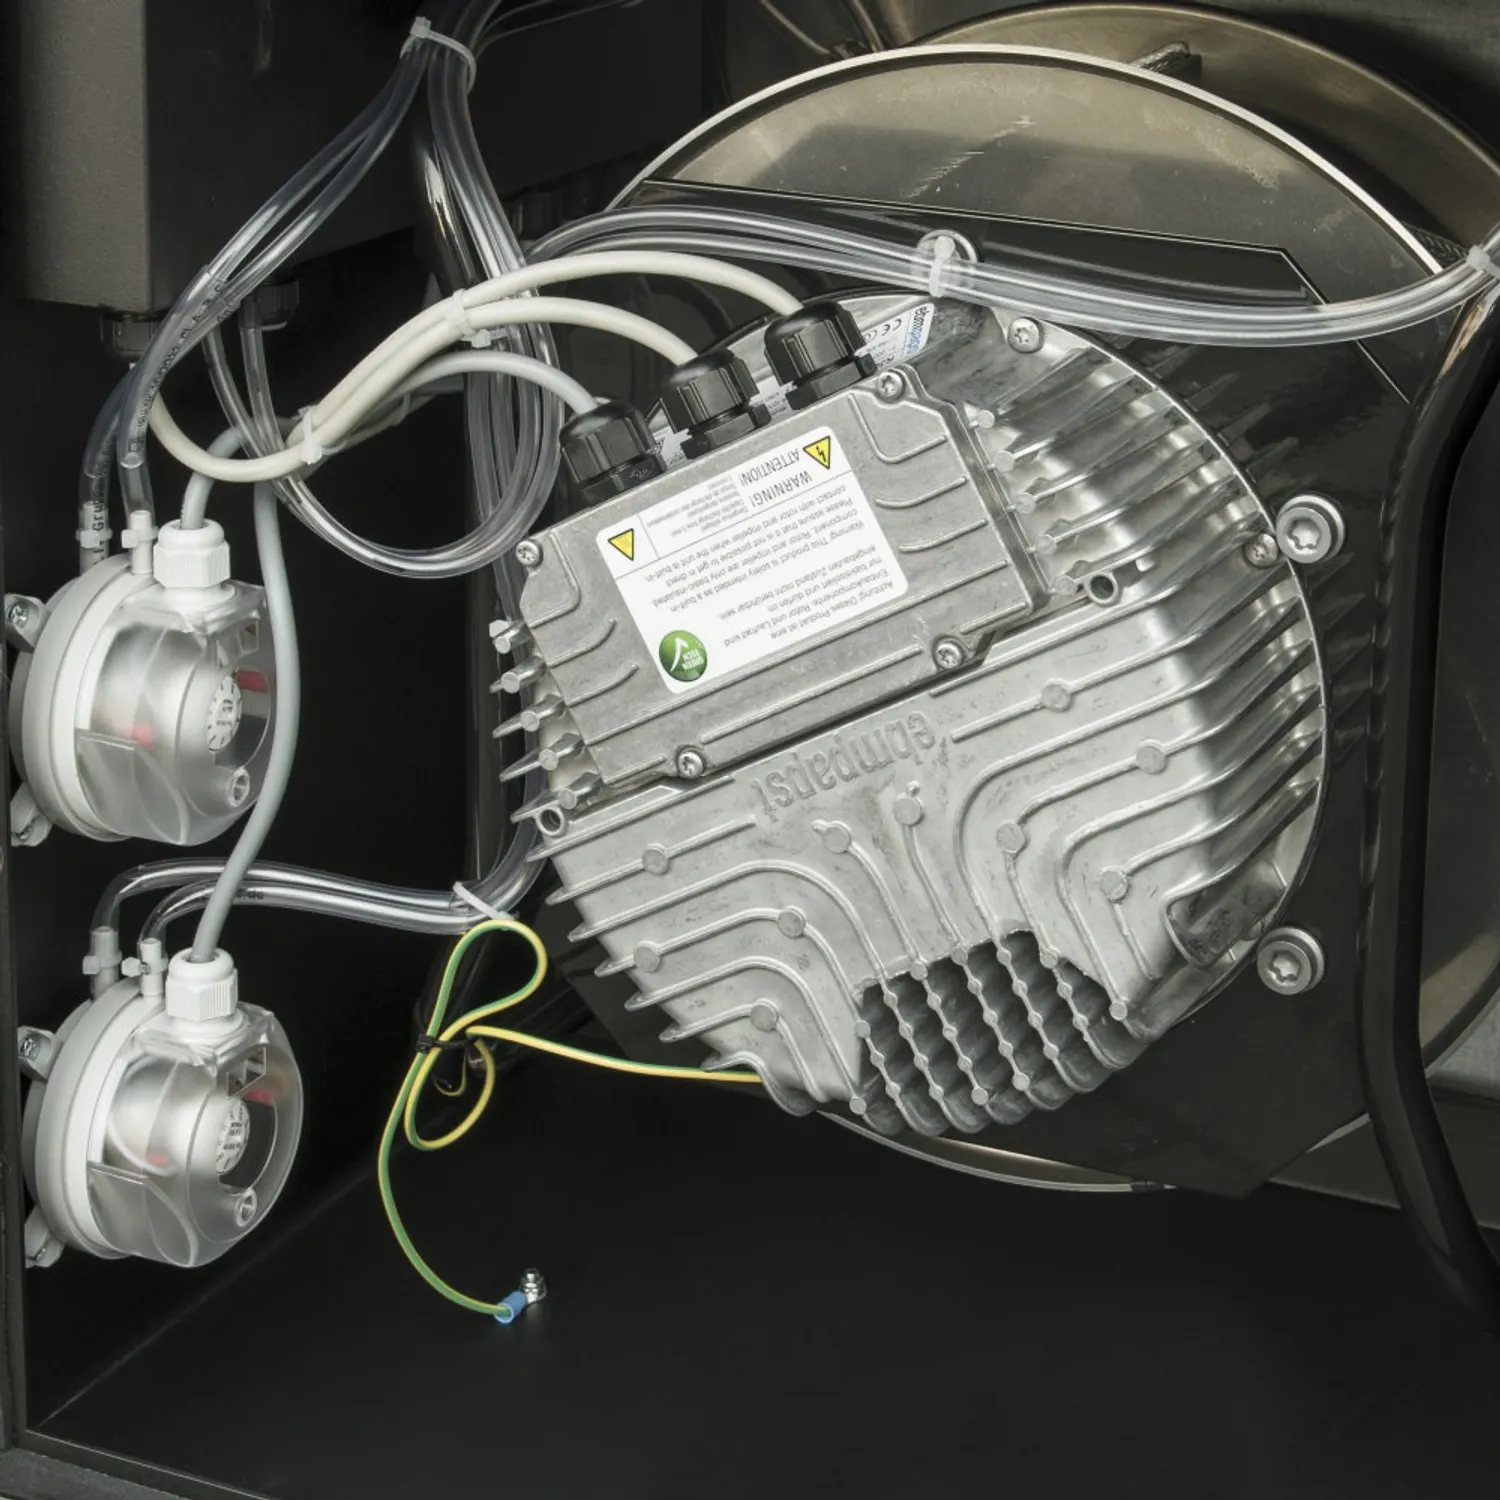 Purificateur-d’air-TAC-6500-66302-1507645970.jpg